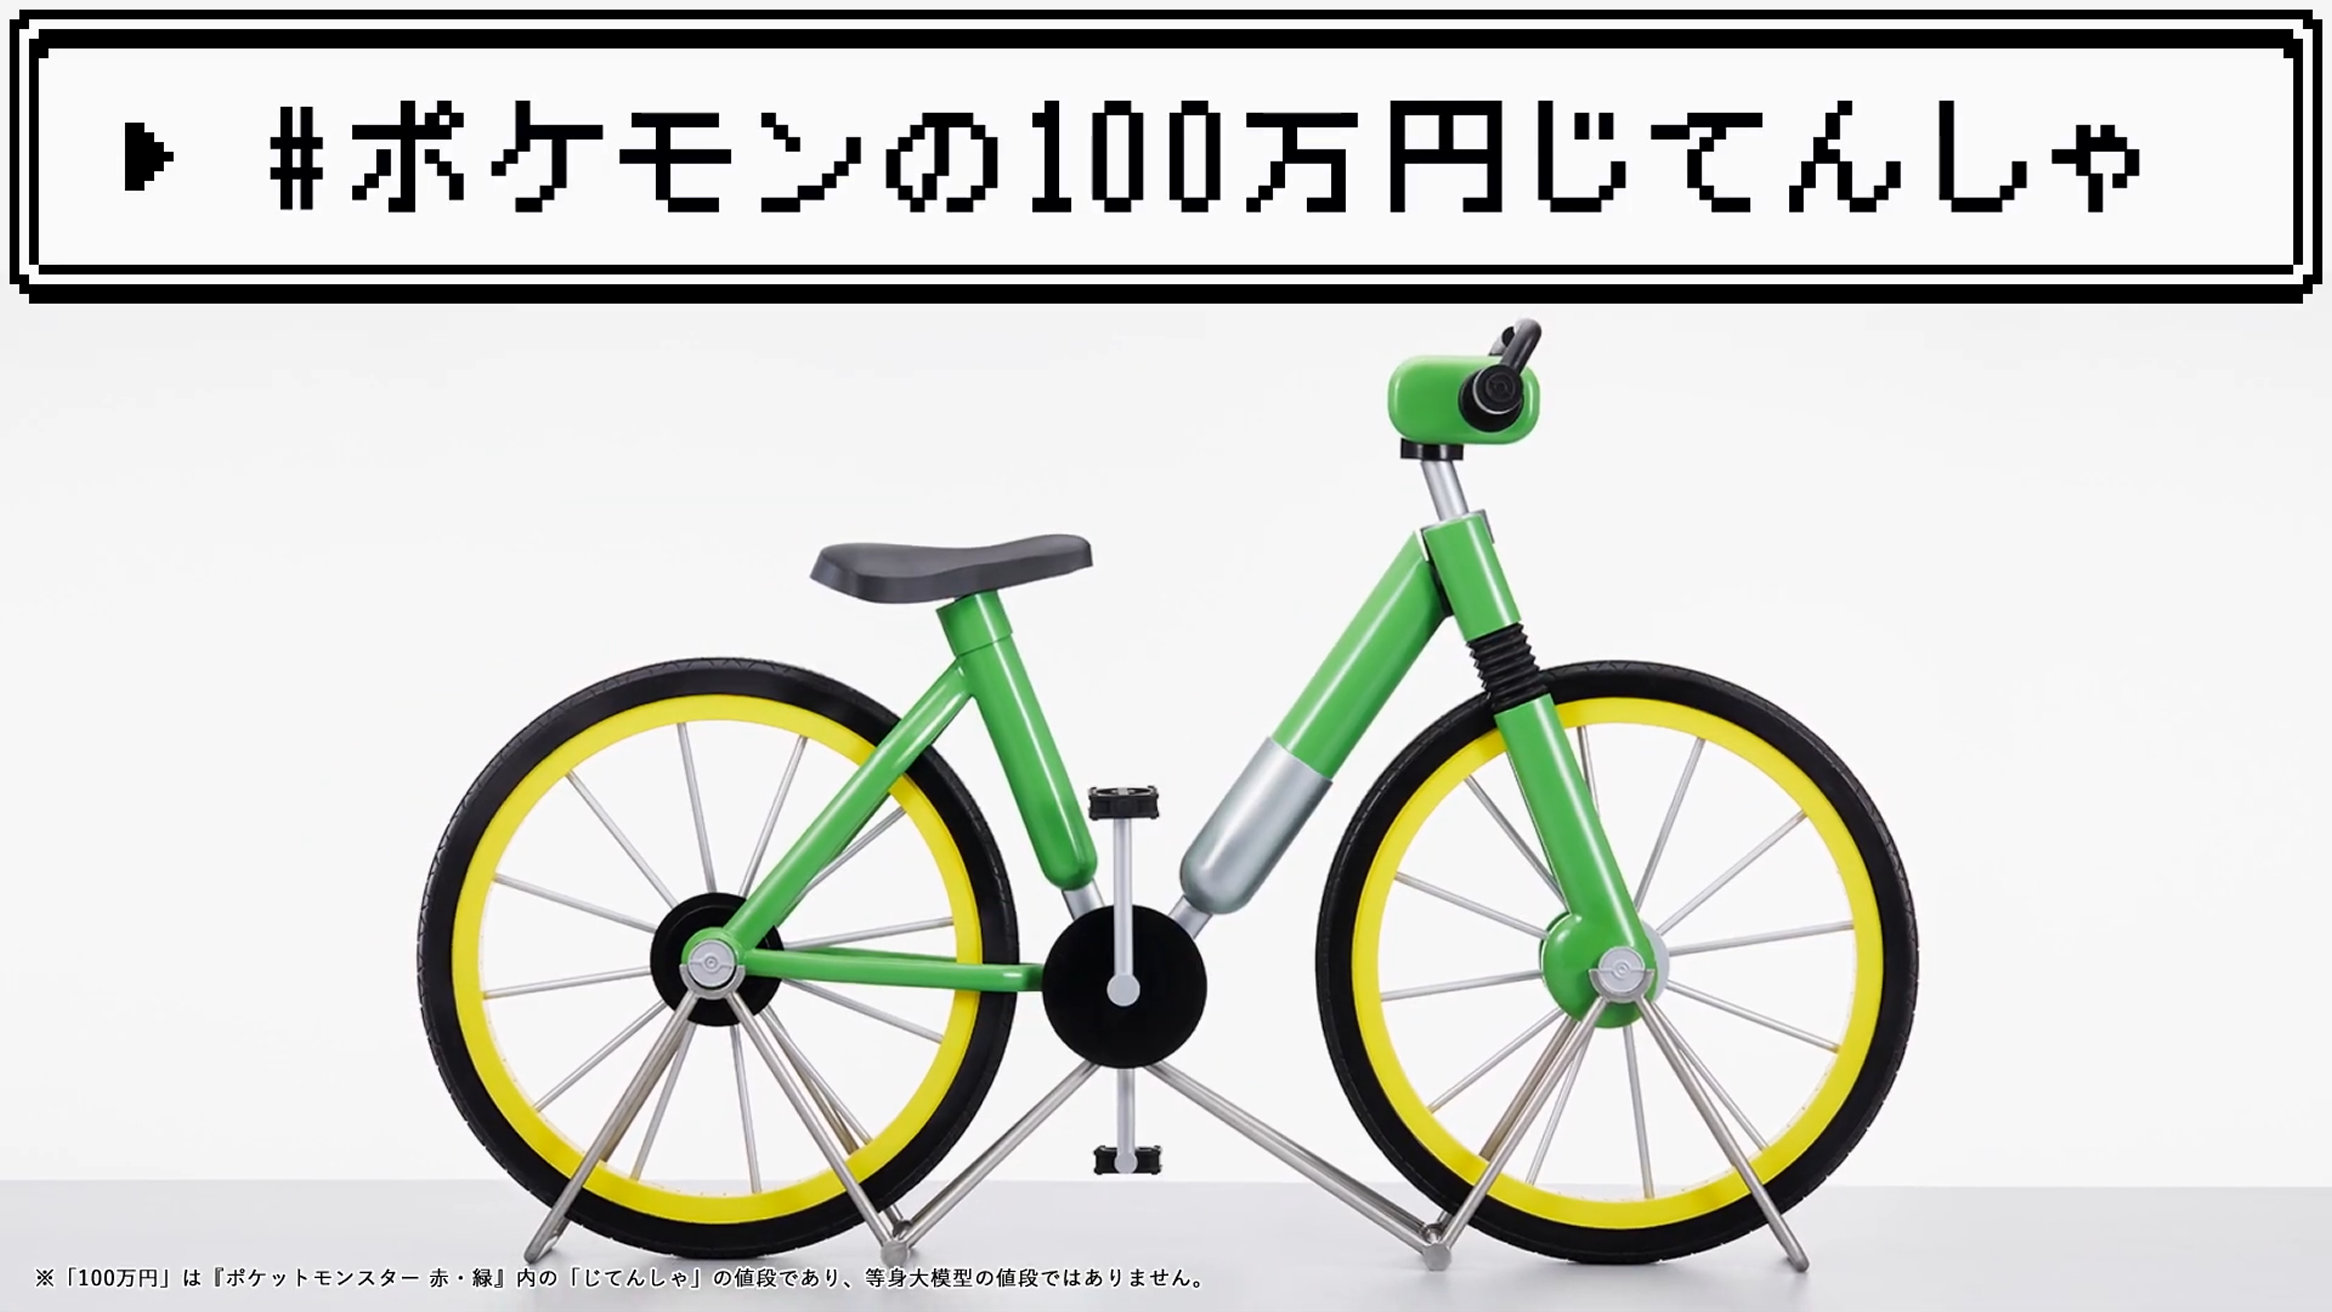 ポケモン赤緑 100万円の自転車の等身大模型が当たる企画実施中